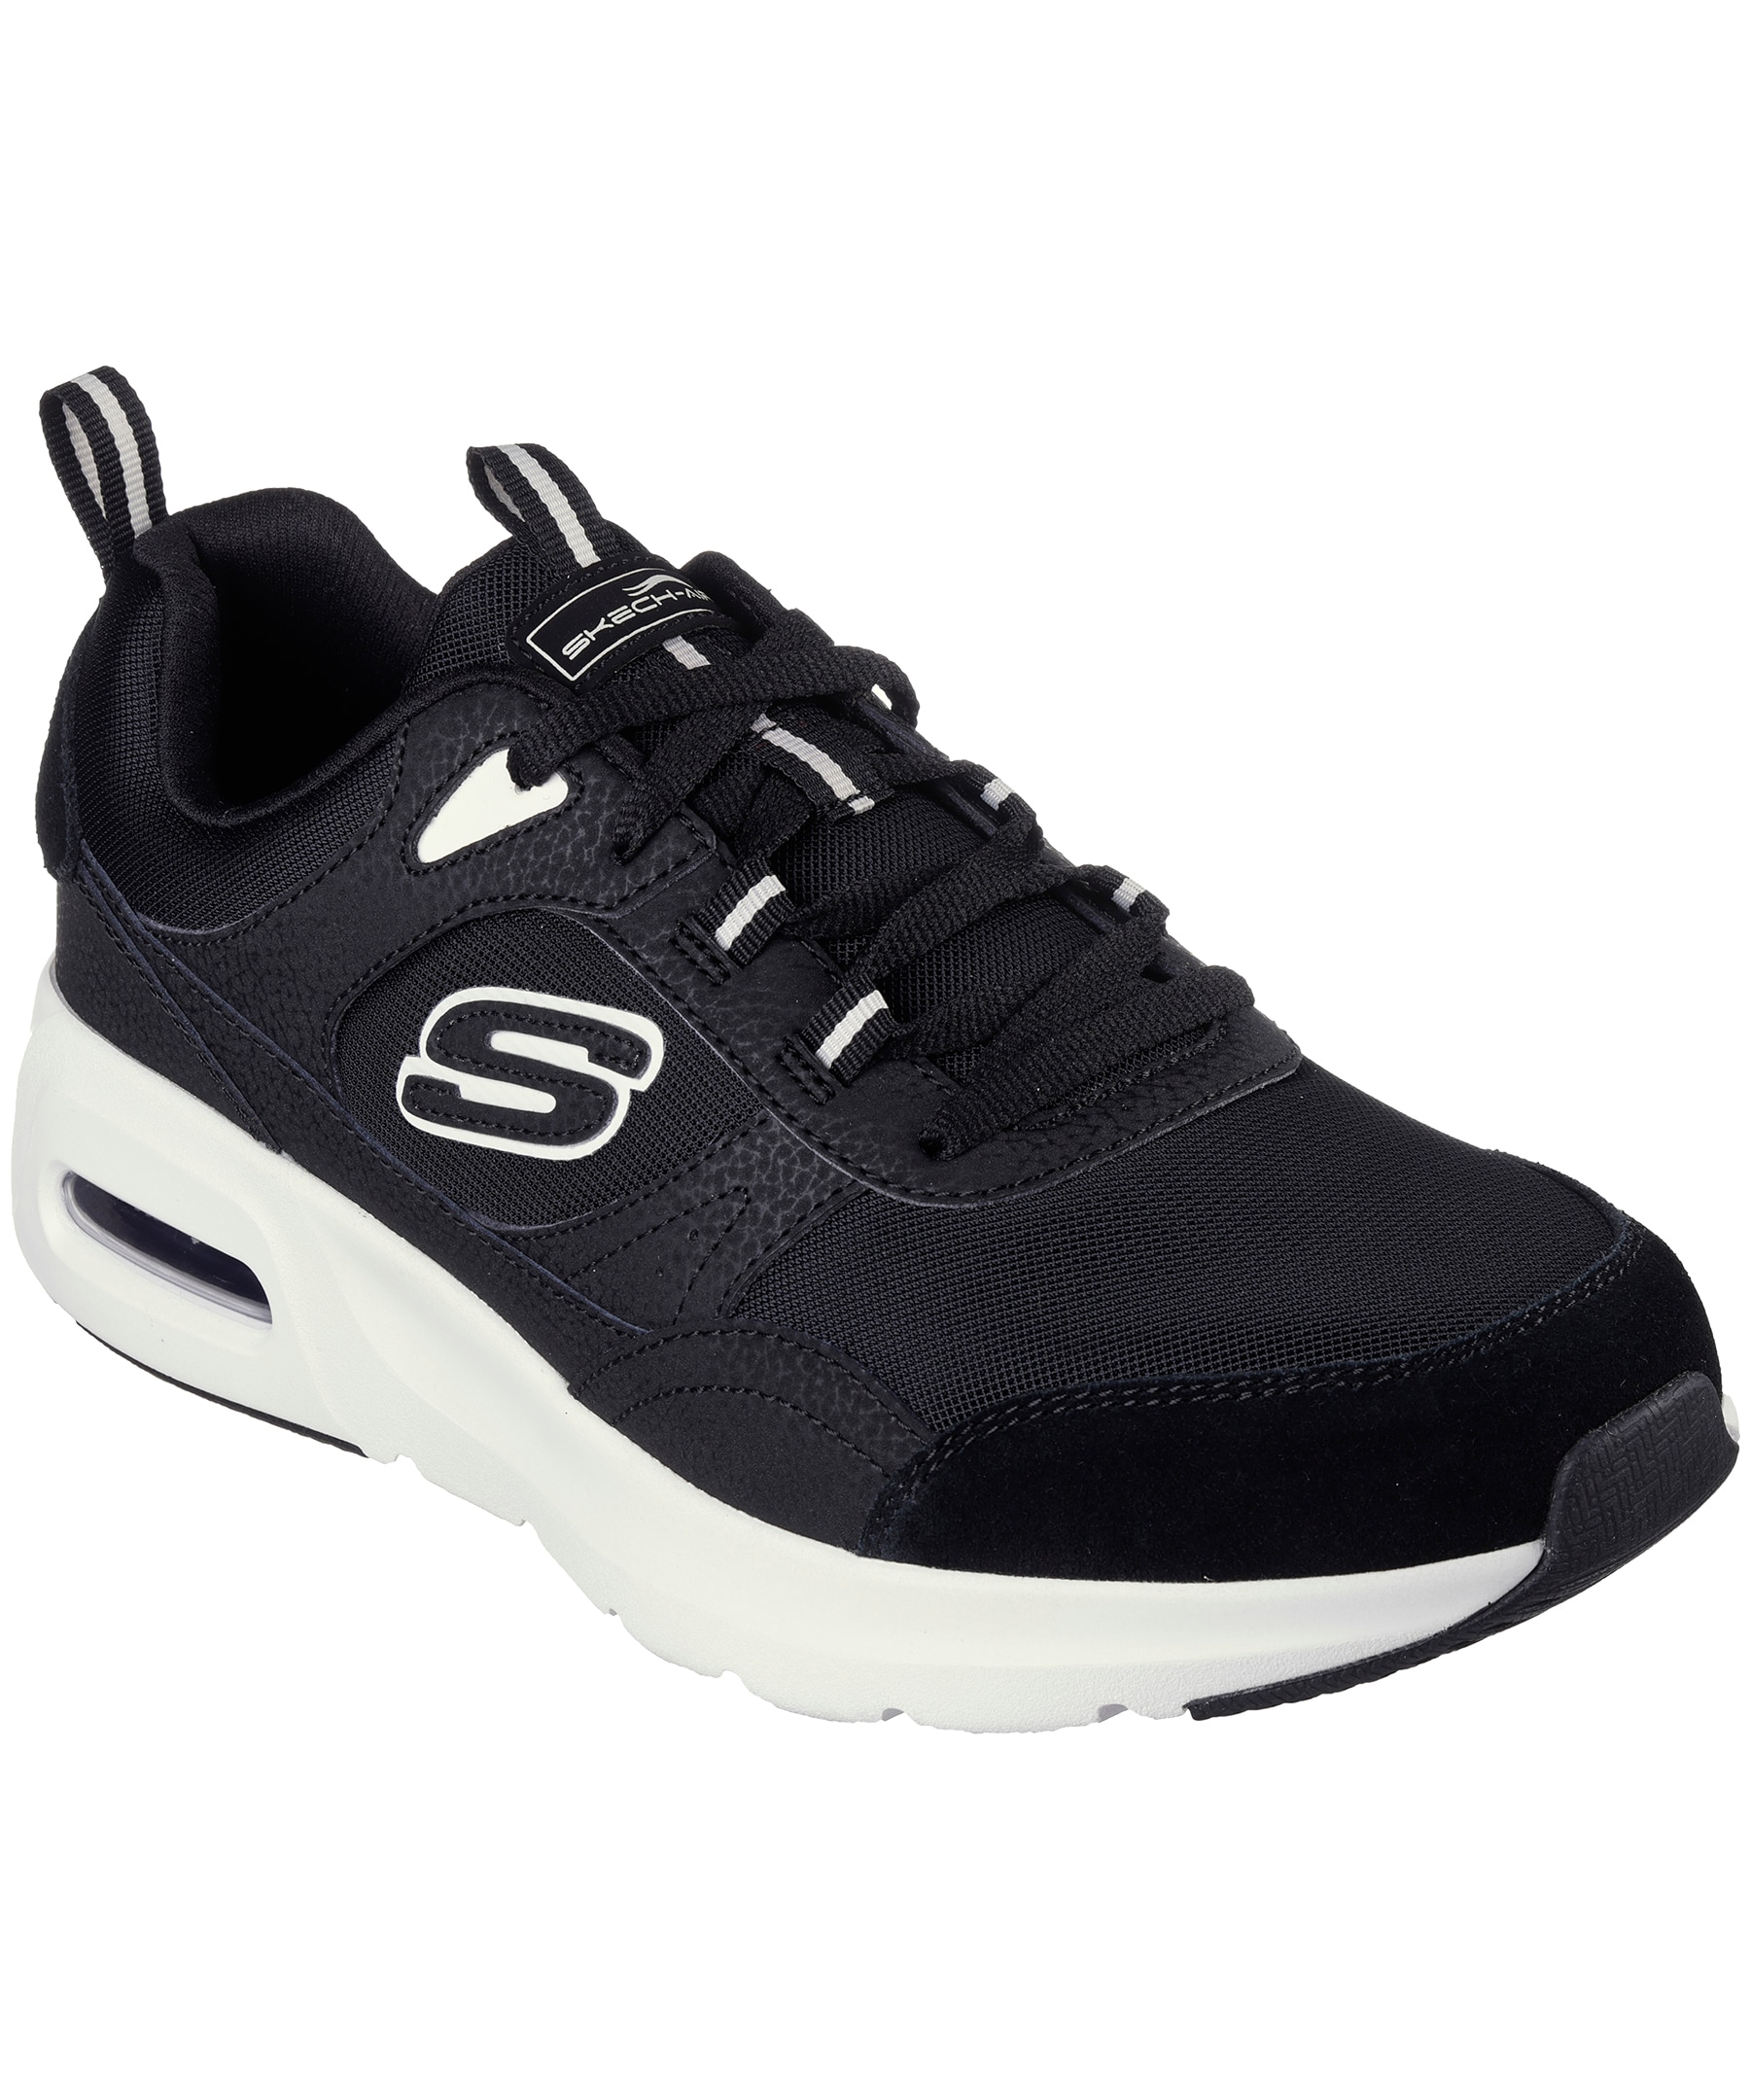 Skechers Men's Skech-Air Court Sneakers - Black/White | Marks